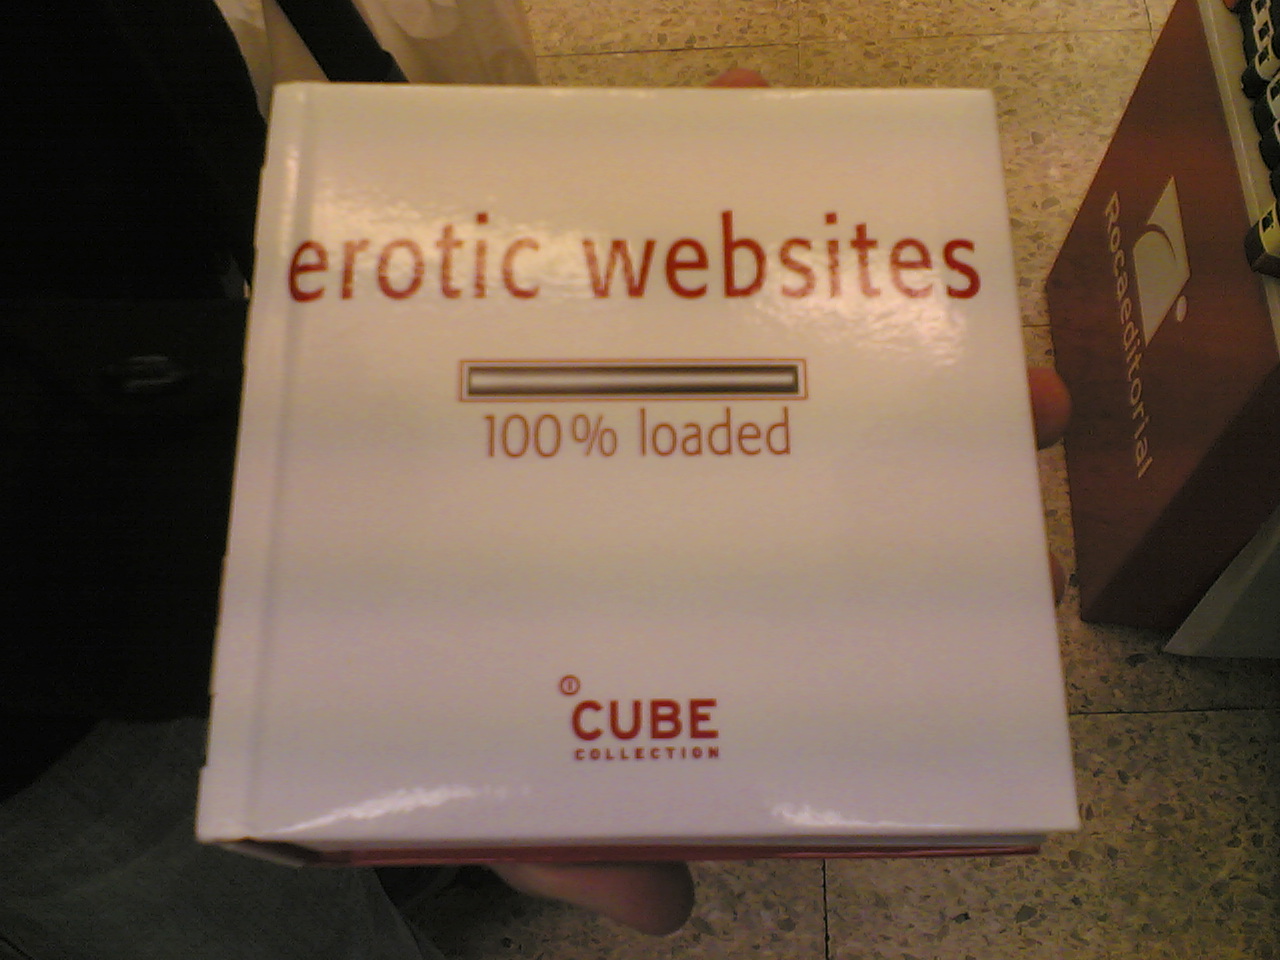 erotic websites.jpg